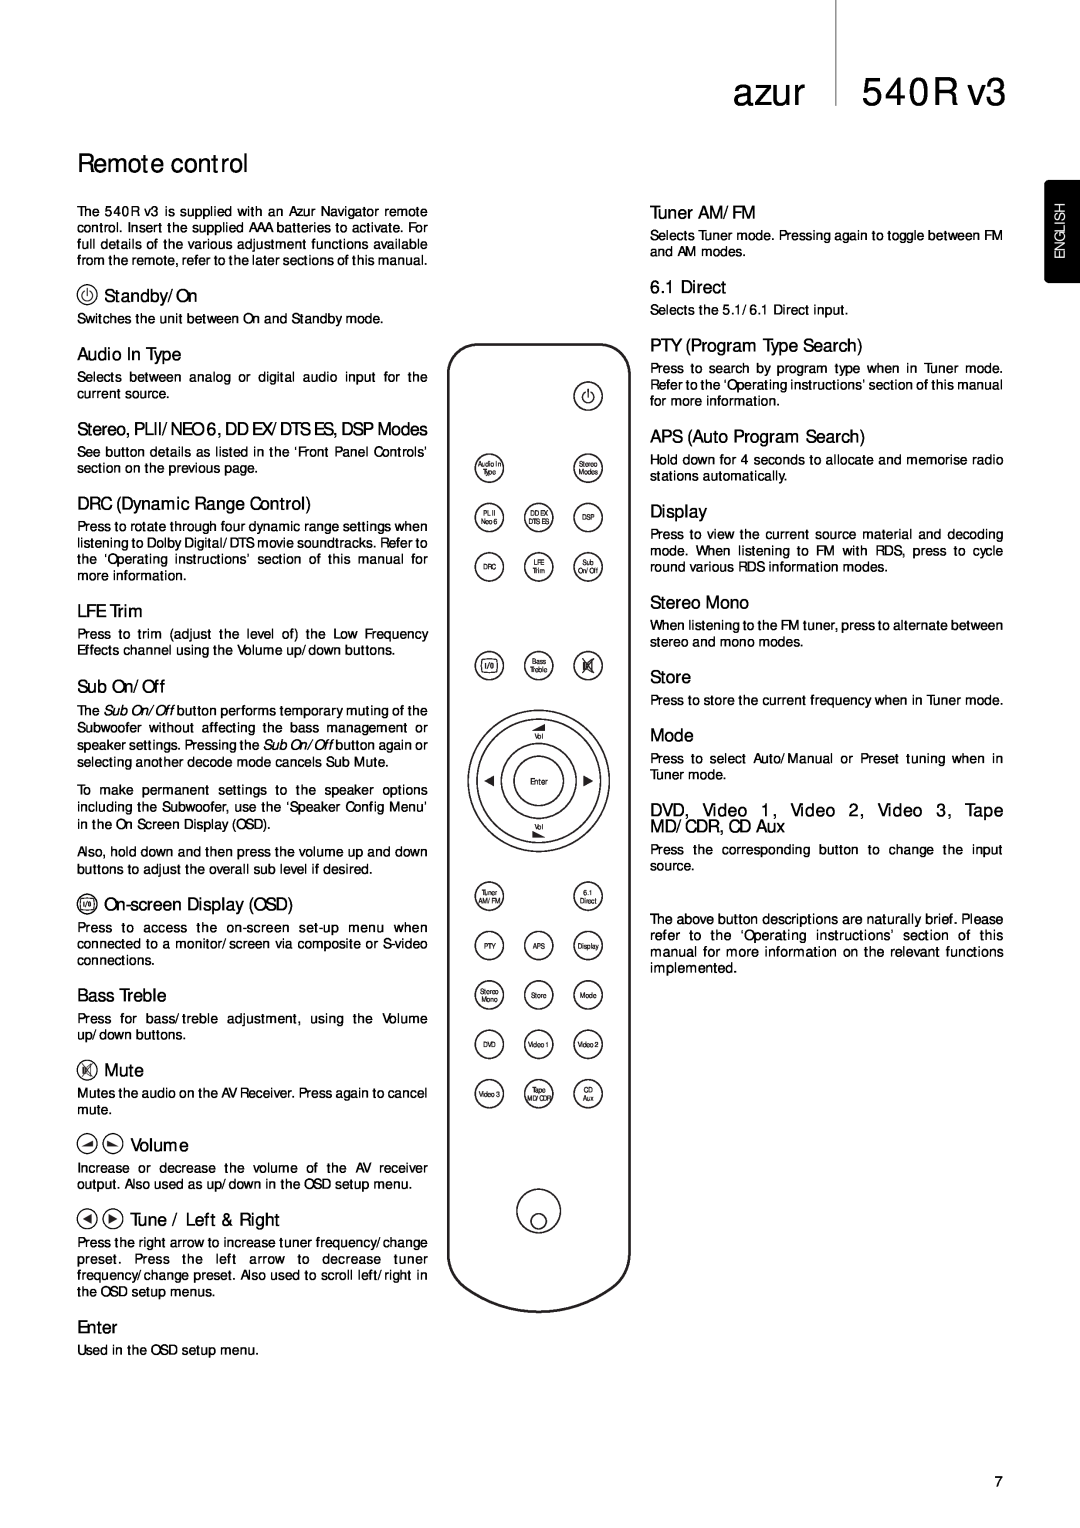 Cambridge Audio 540R V3 user manual Remote control, azur 540R 